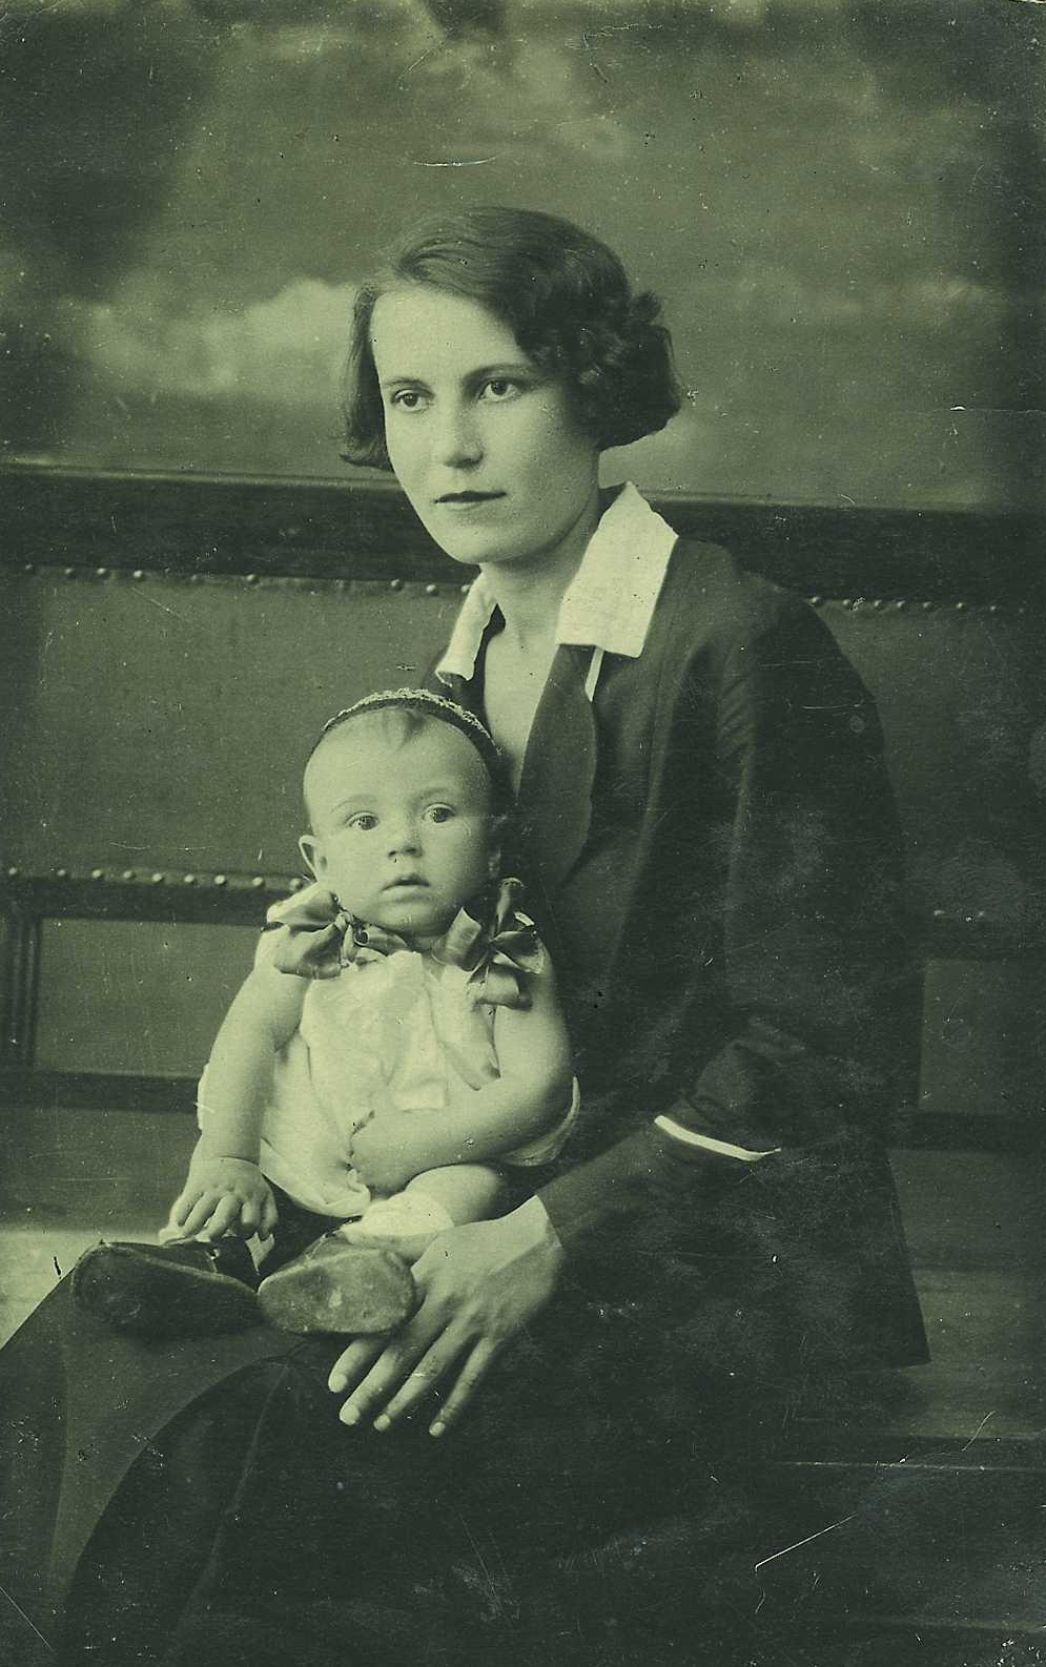 Portraitaufnahme von Aleksandra Pawlowna Lawrik mit einem Baby auf ihrem Schoß